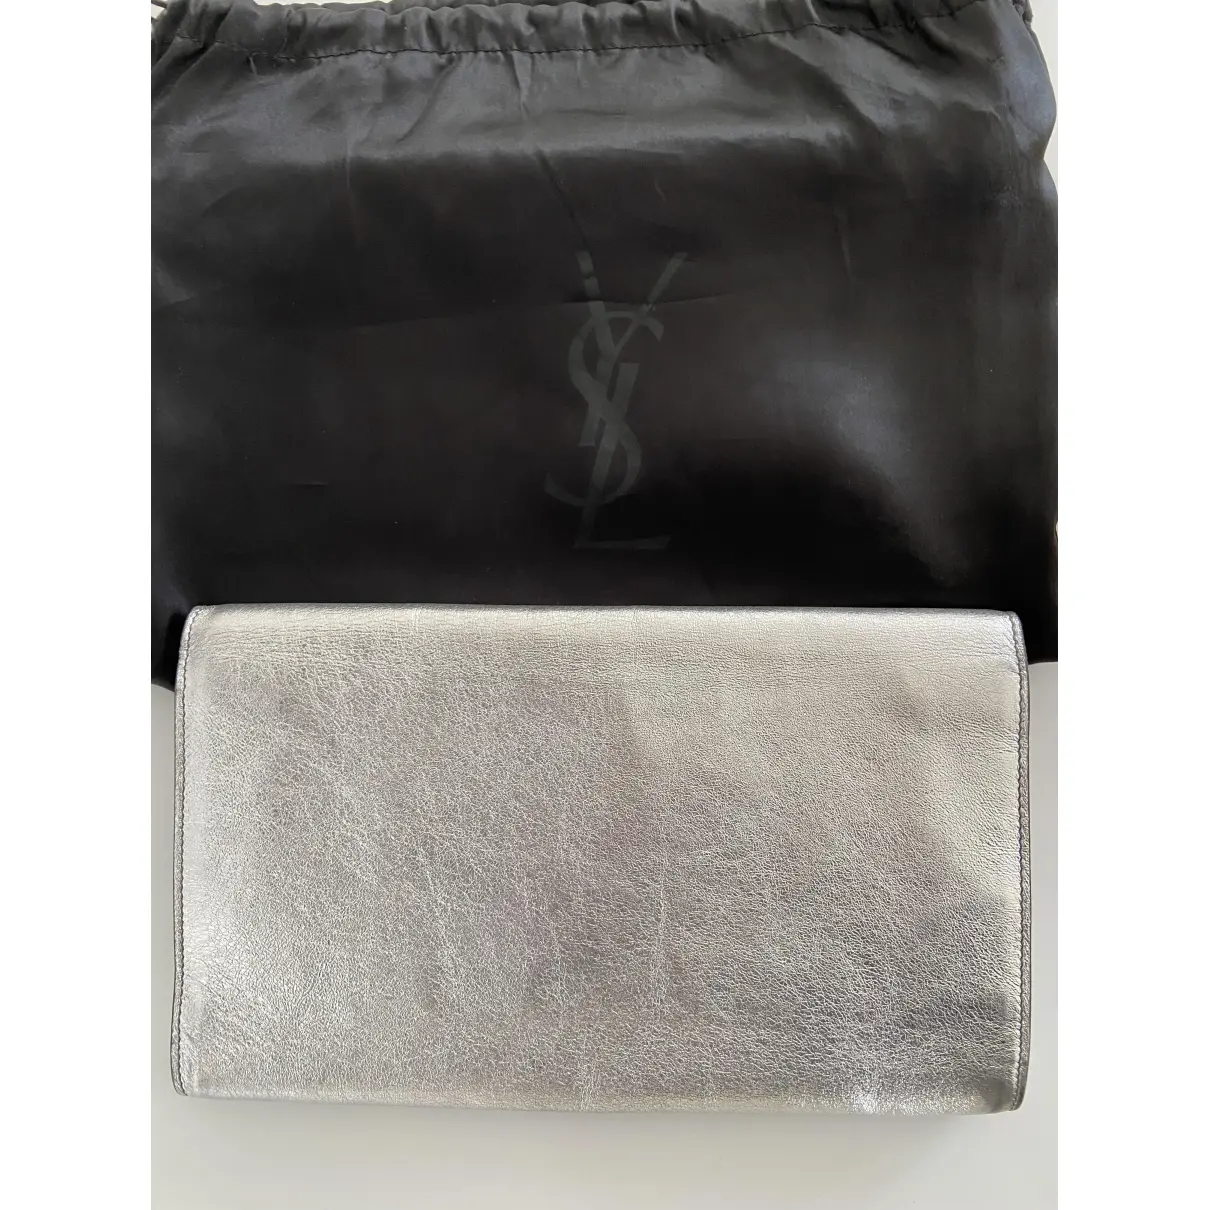 Buy Yves Saint Laurent Belle de Jour patent leather clutch bag online